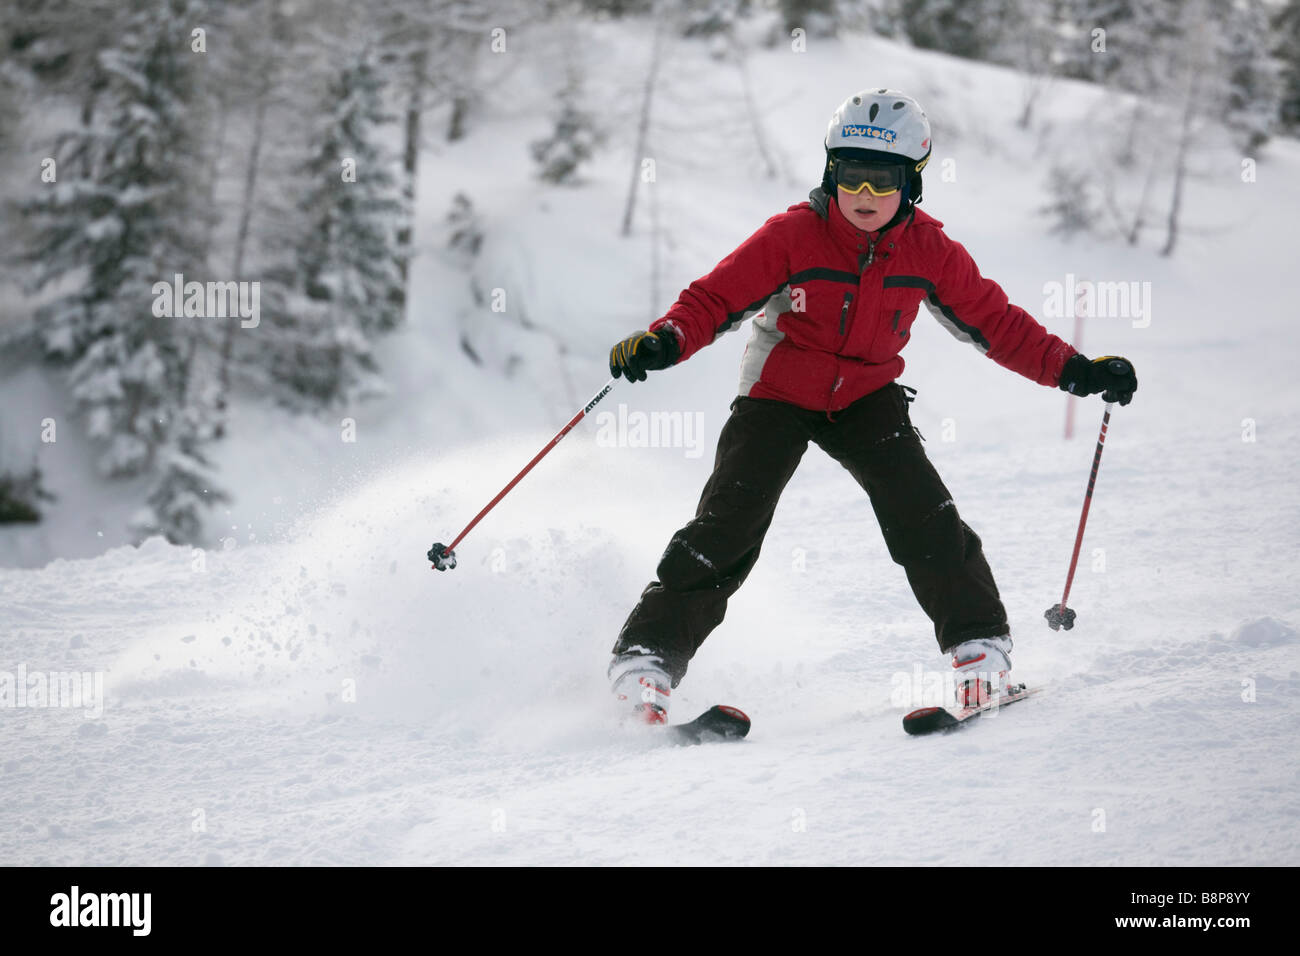 Les jeunes skieurs novices faisant tourner avec chasse-neige ski alpin ski de neige fraîche sur les pistes dans les Alpes autrichiennes Autriche Europe Banque D'Images